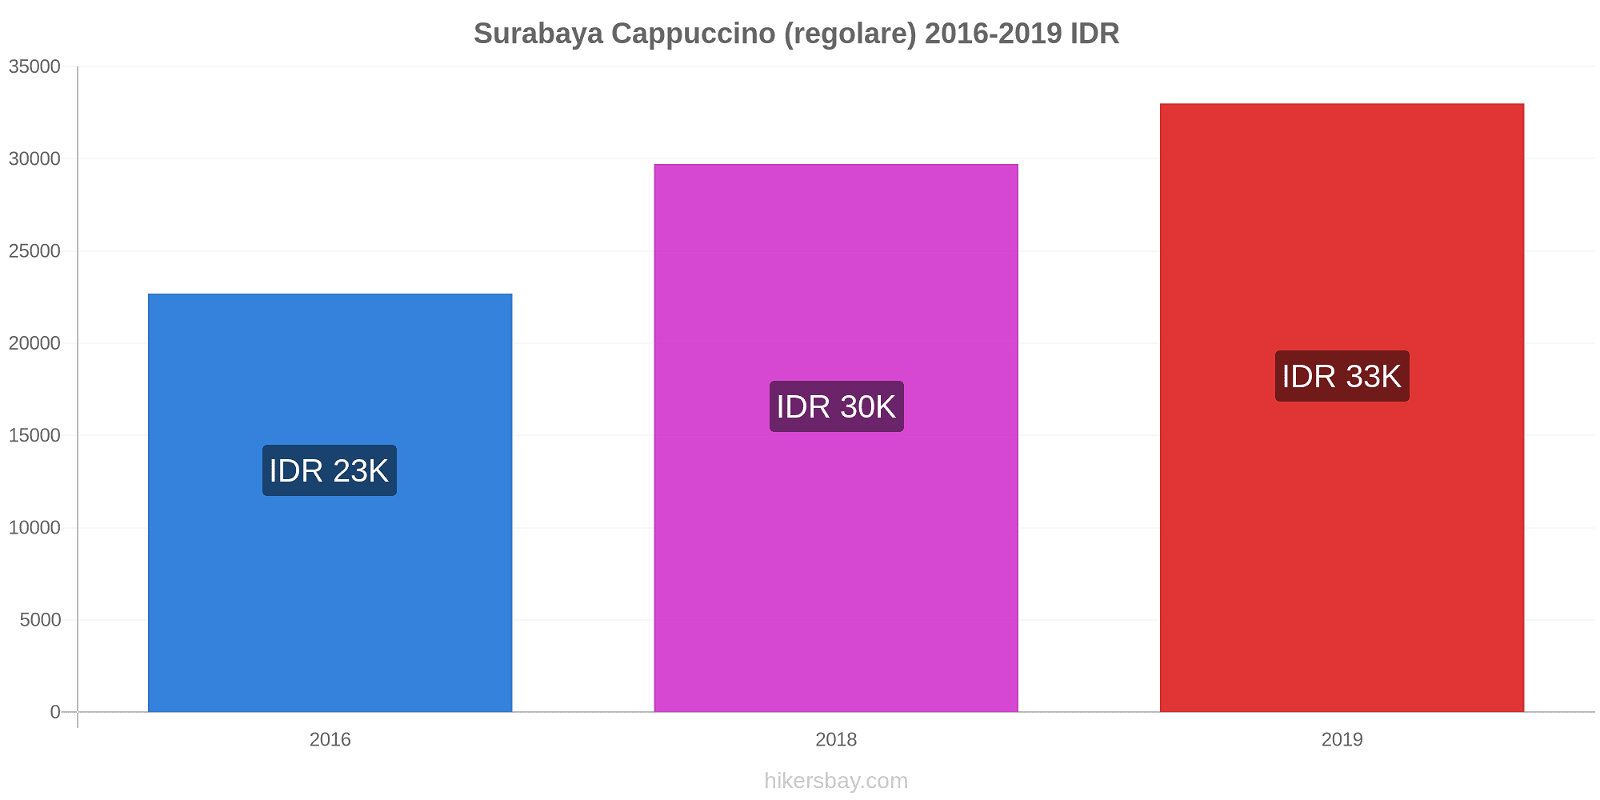 Surabaya variazioni di prezzo Cappuccino (normale) hikersbay.com